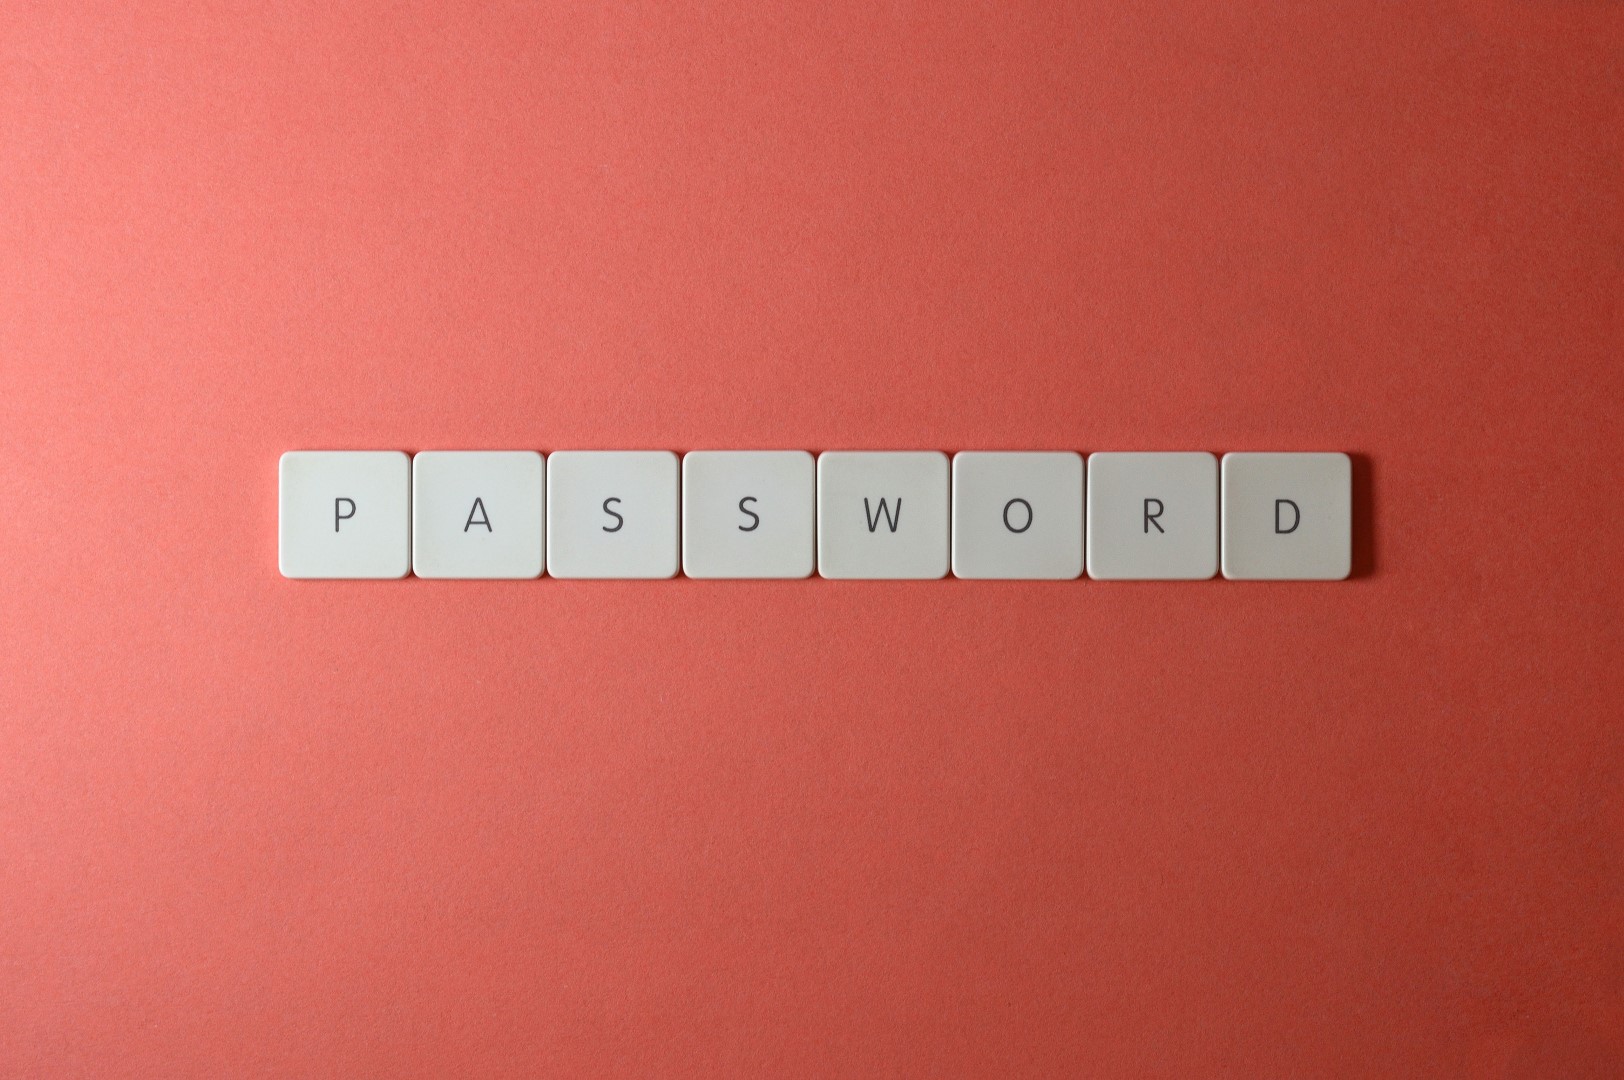 Passwörter schützen unsere Daten vor unberechtigtem Zugriff und sind darum ein entscheidendes Element der Computersicherheit. Sie sind sozusagen die Türsteher. Wer an ihnen vorbeikommt, ist drin - Punkt. In diesem Artikel erfahren Sie, was ein gutes Passwort ausmacht. Sie erfahren über die Grundlagen der Passwortsicherheit, wie Angriffe auf Passwörter ablaufen und wie Sie sich davor schützen können.